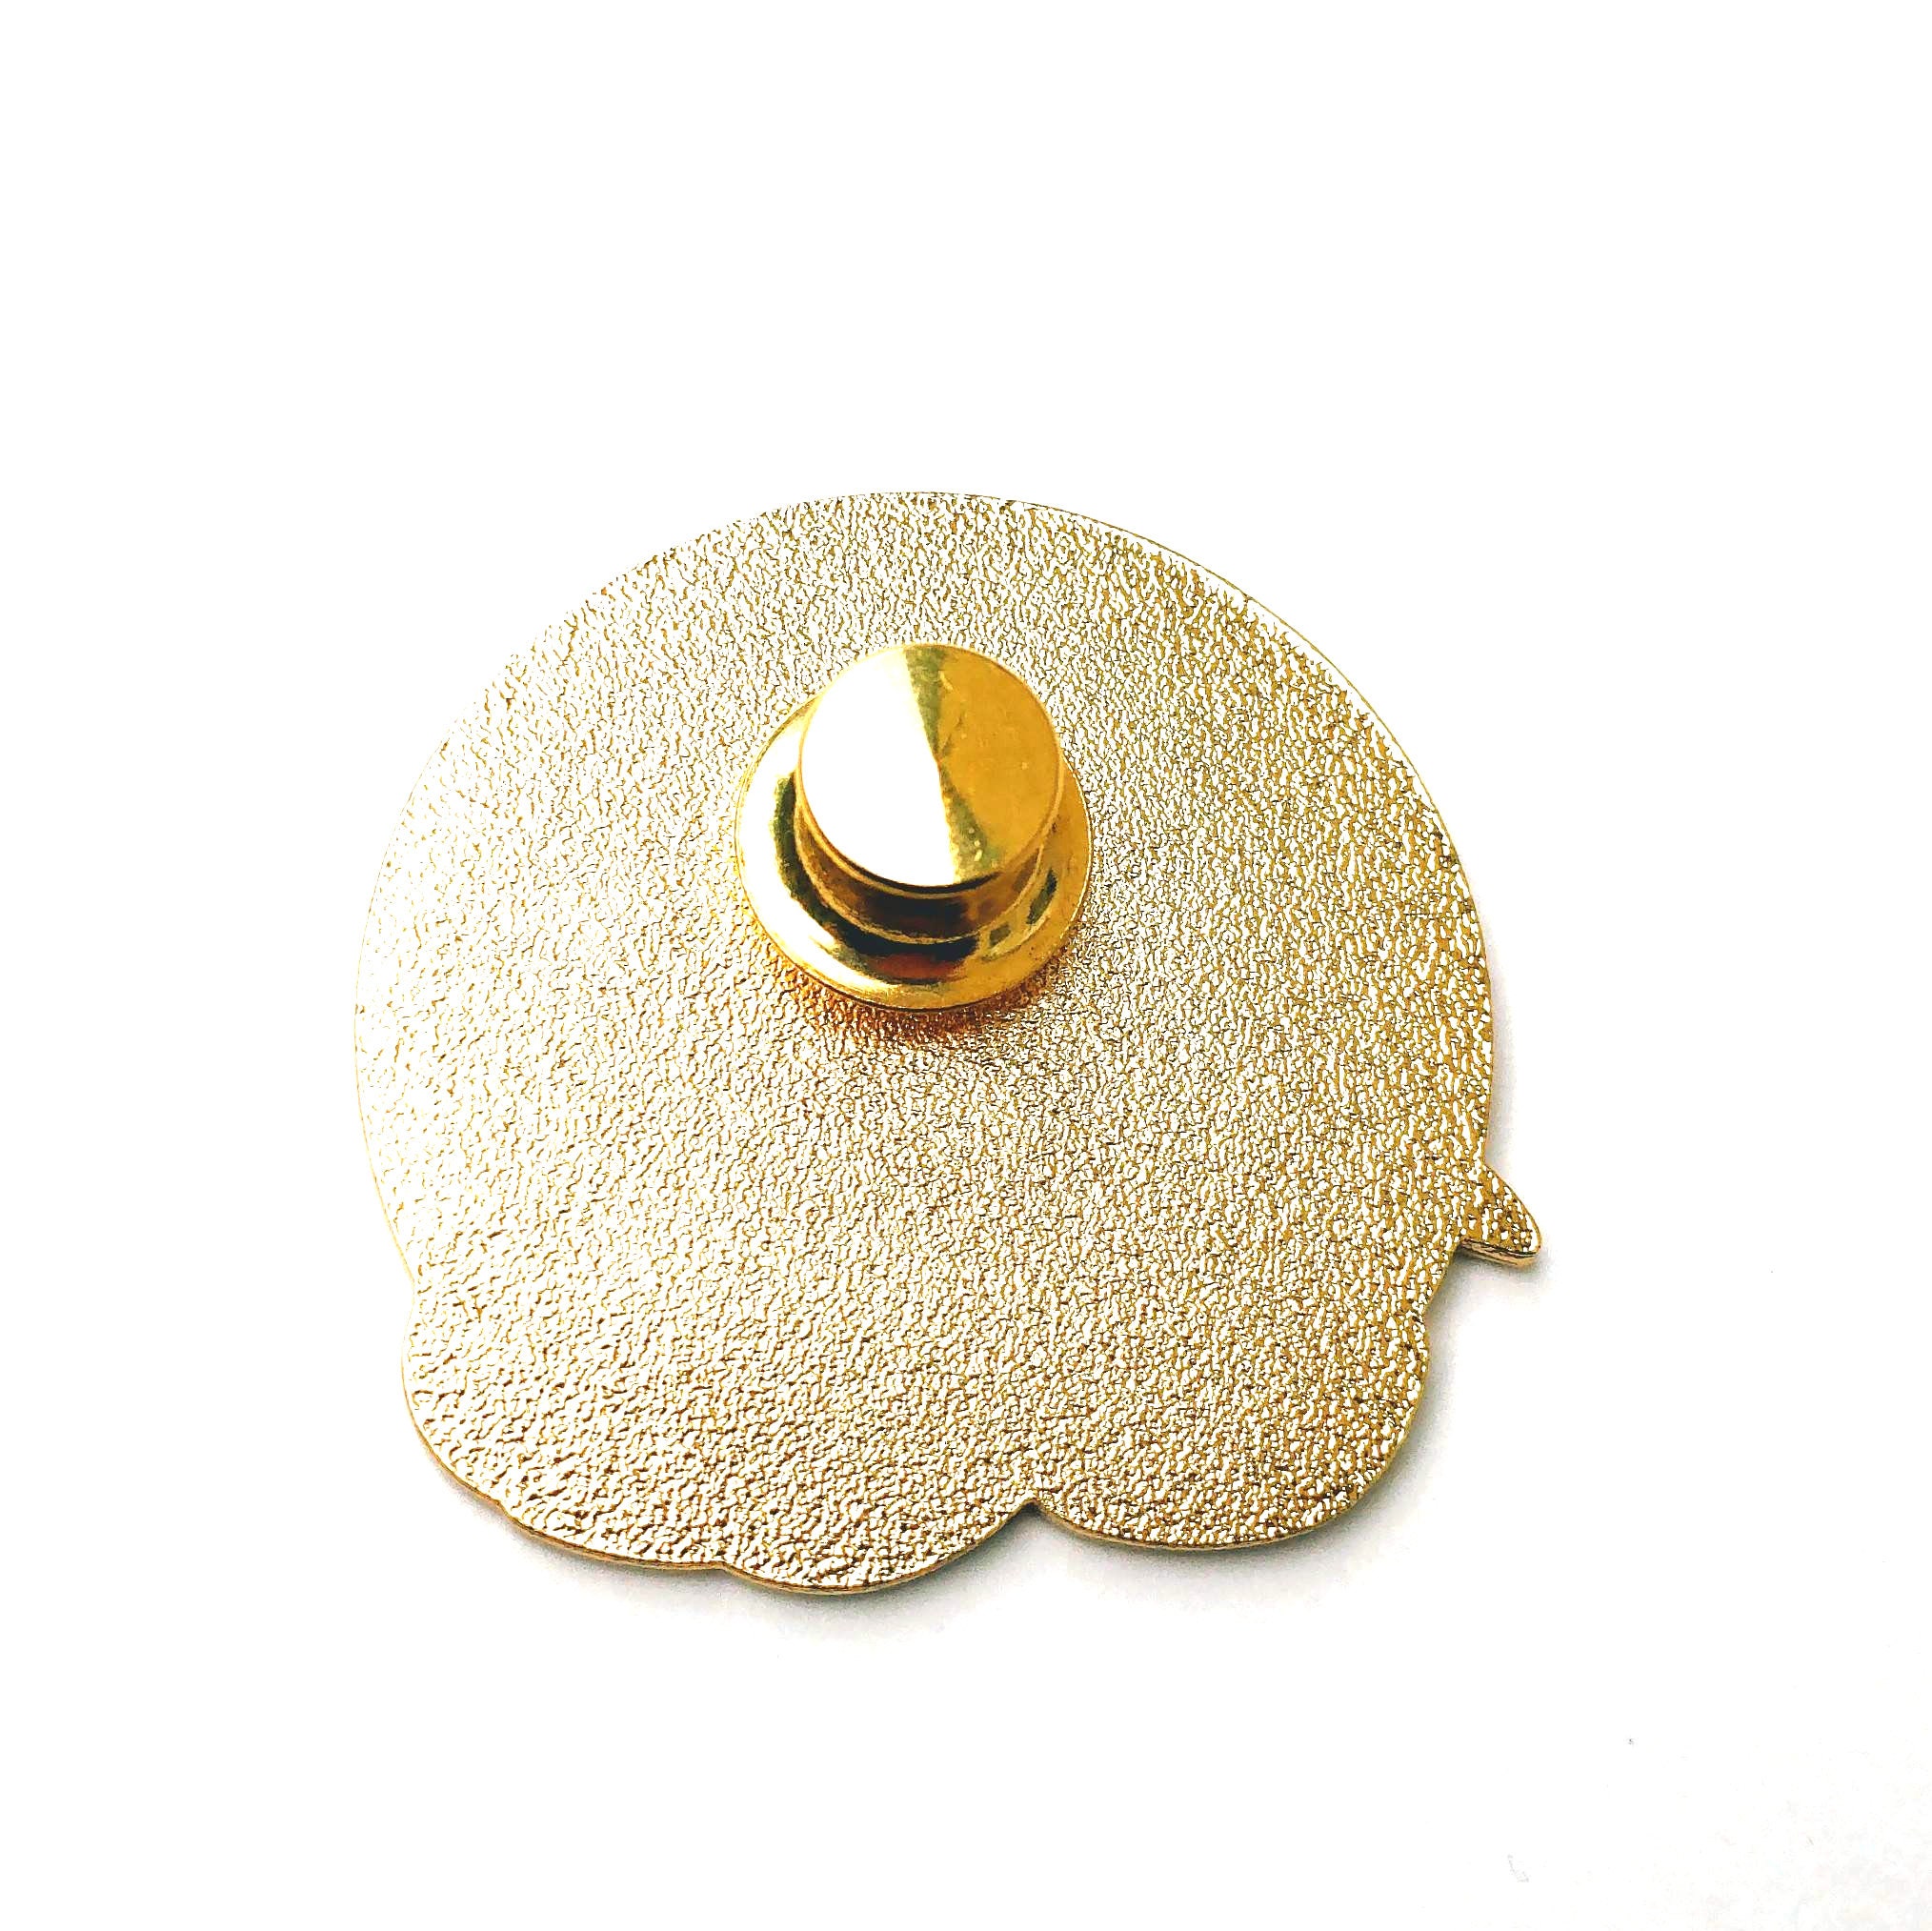 Pin Locking Back Gold or Silver Enamel Pin Lock Backing 